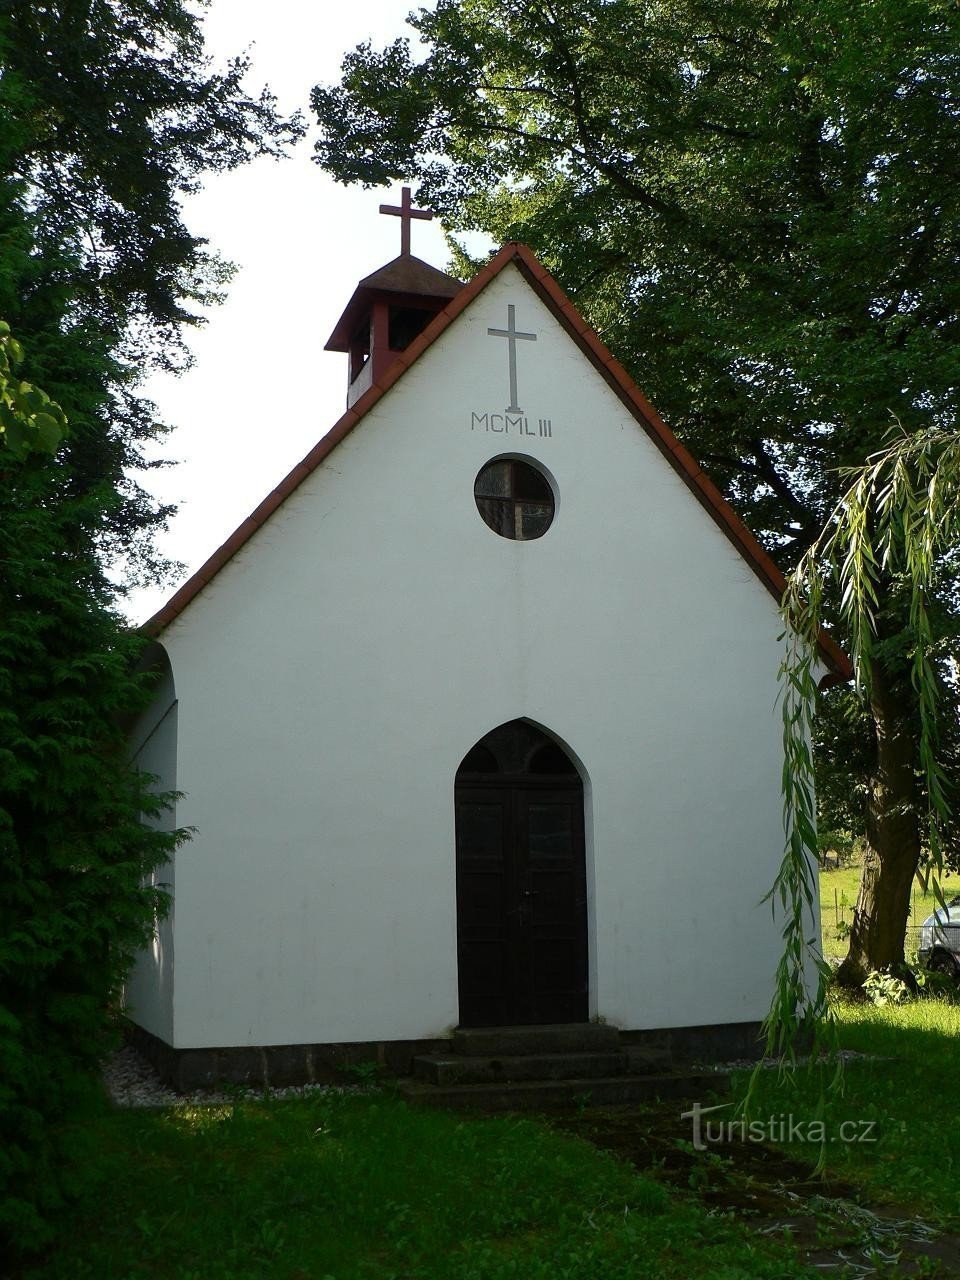 Střeziměr, front of the chapel